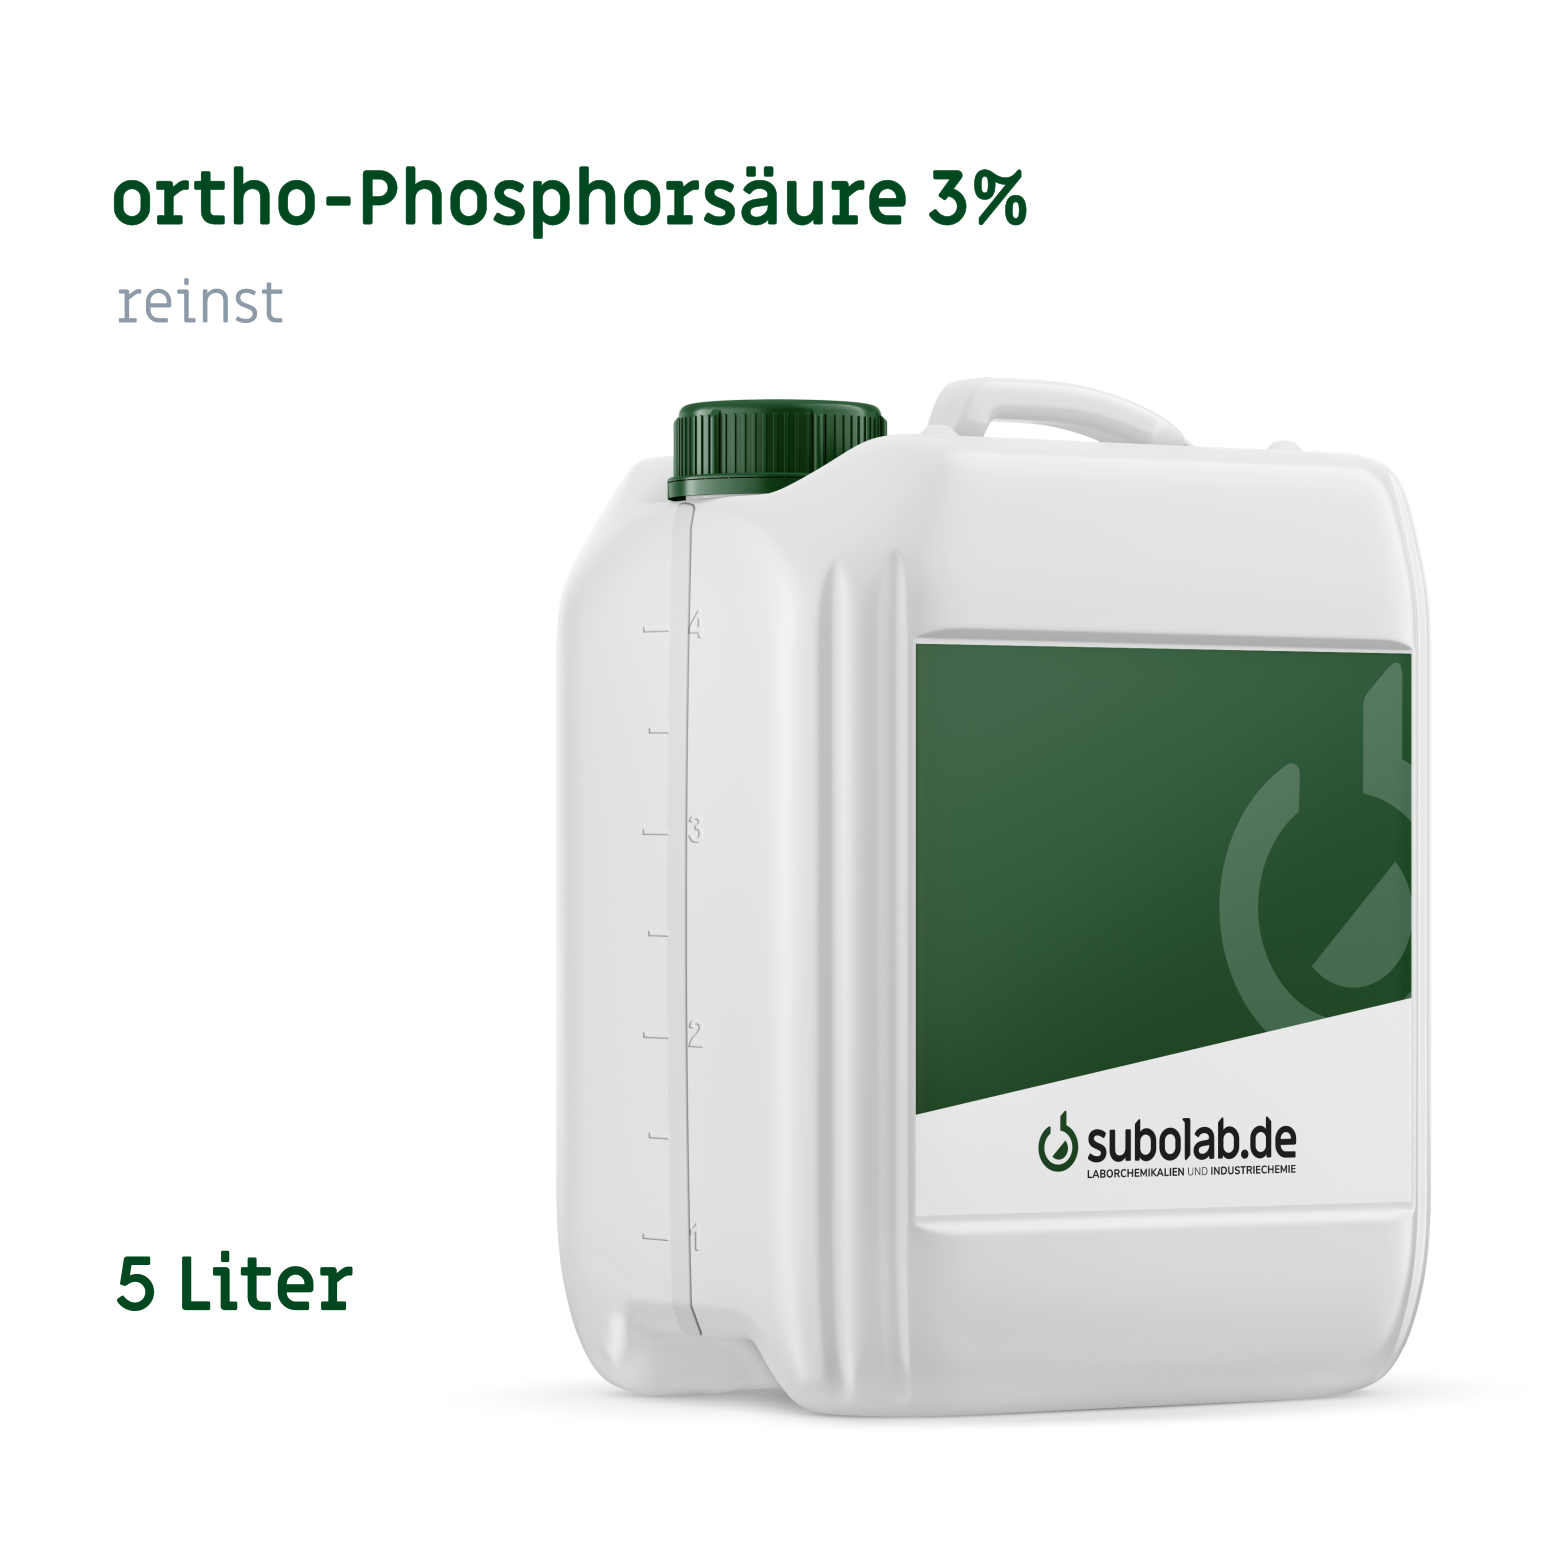 Bild von ortho-Phosphorsäure 3% reinst (5 Liter)